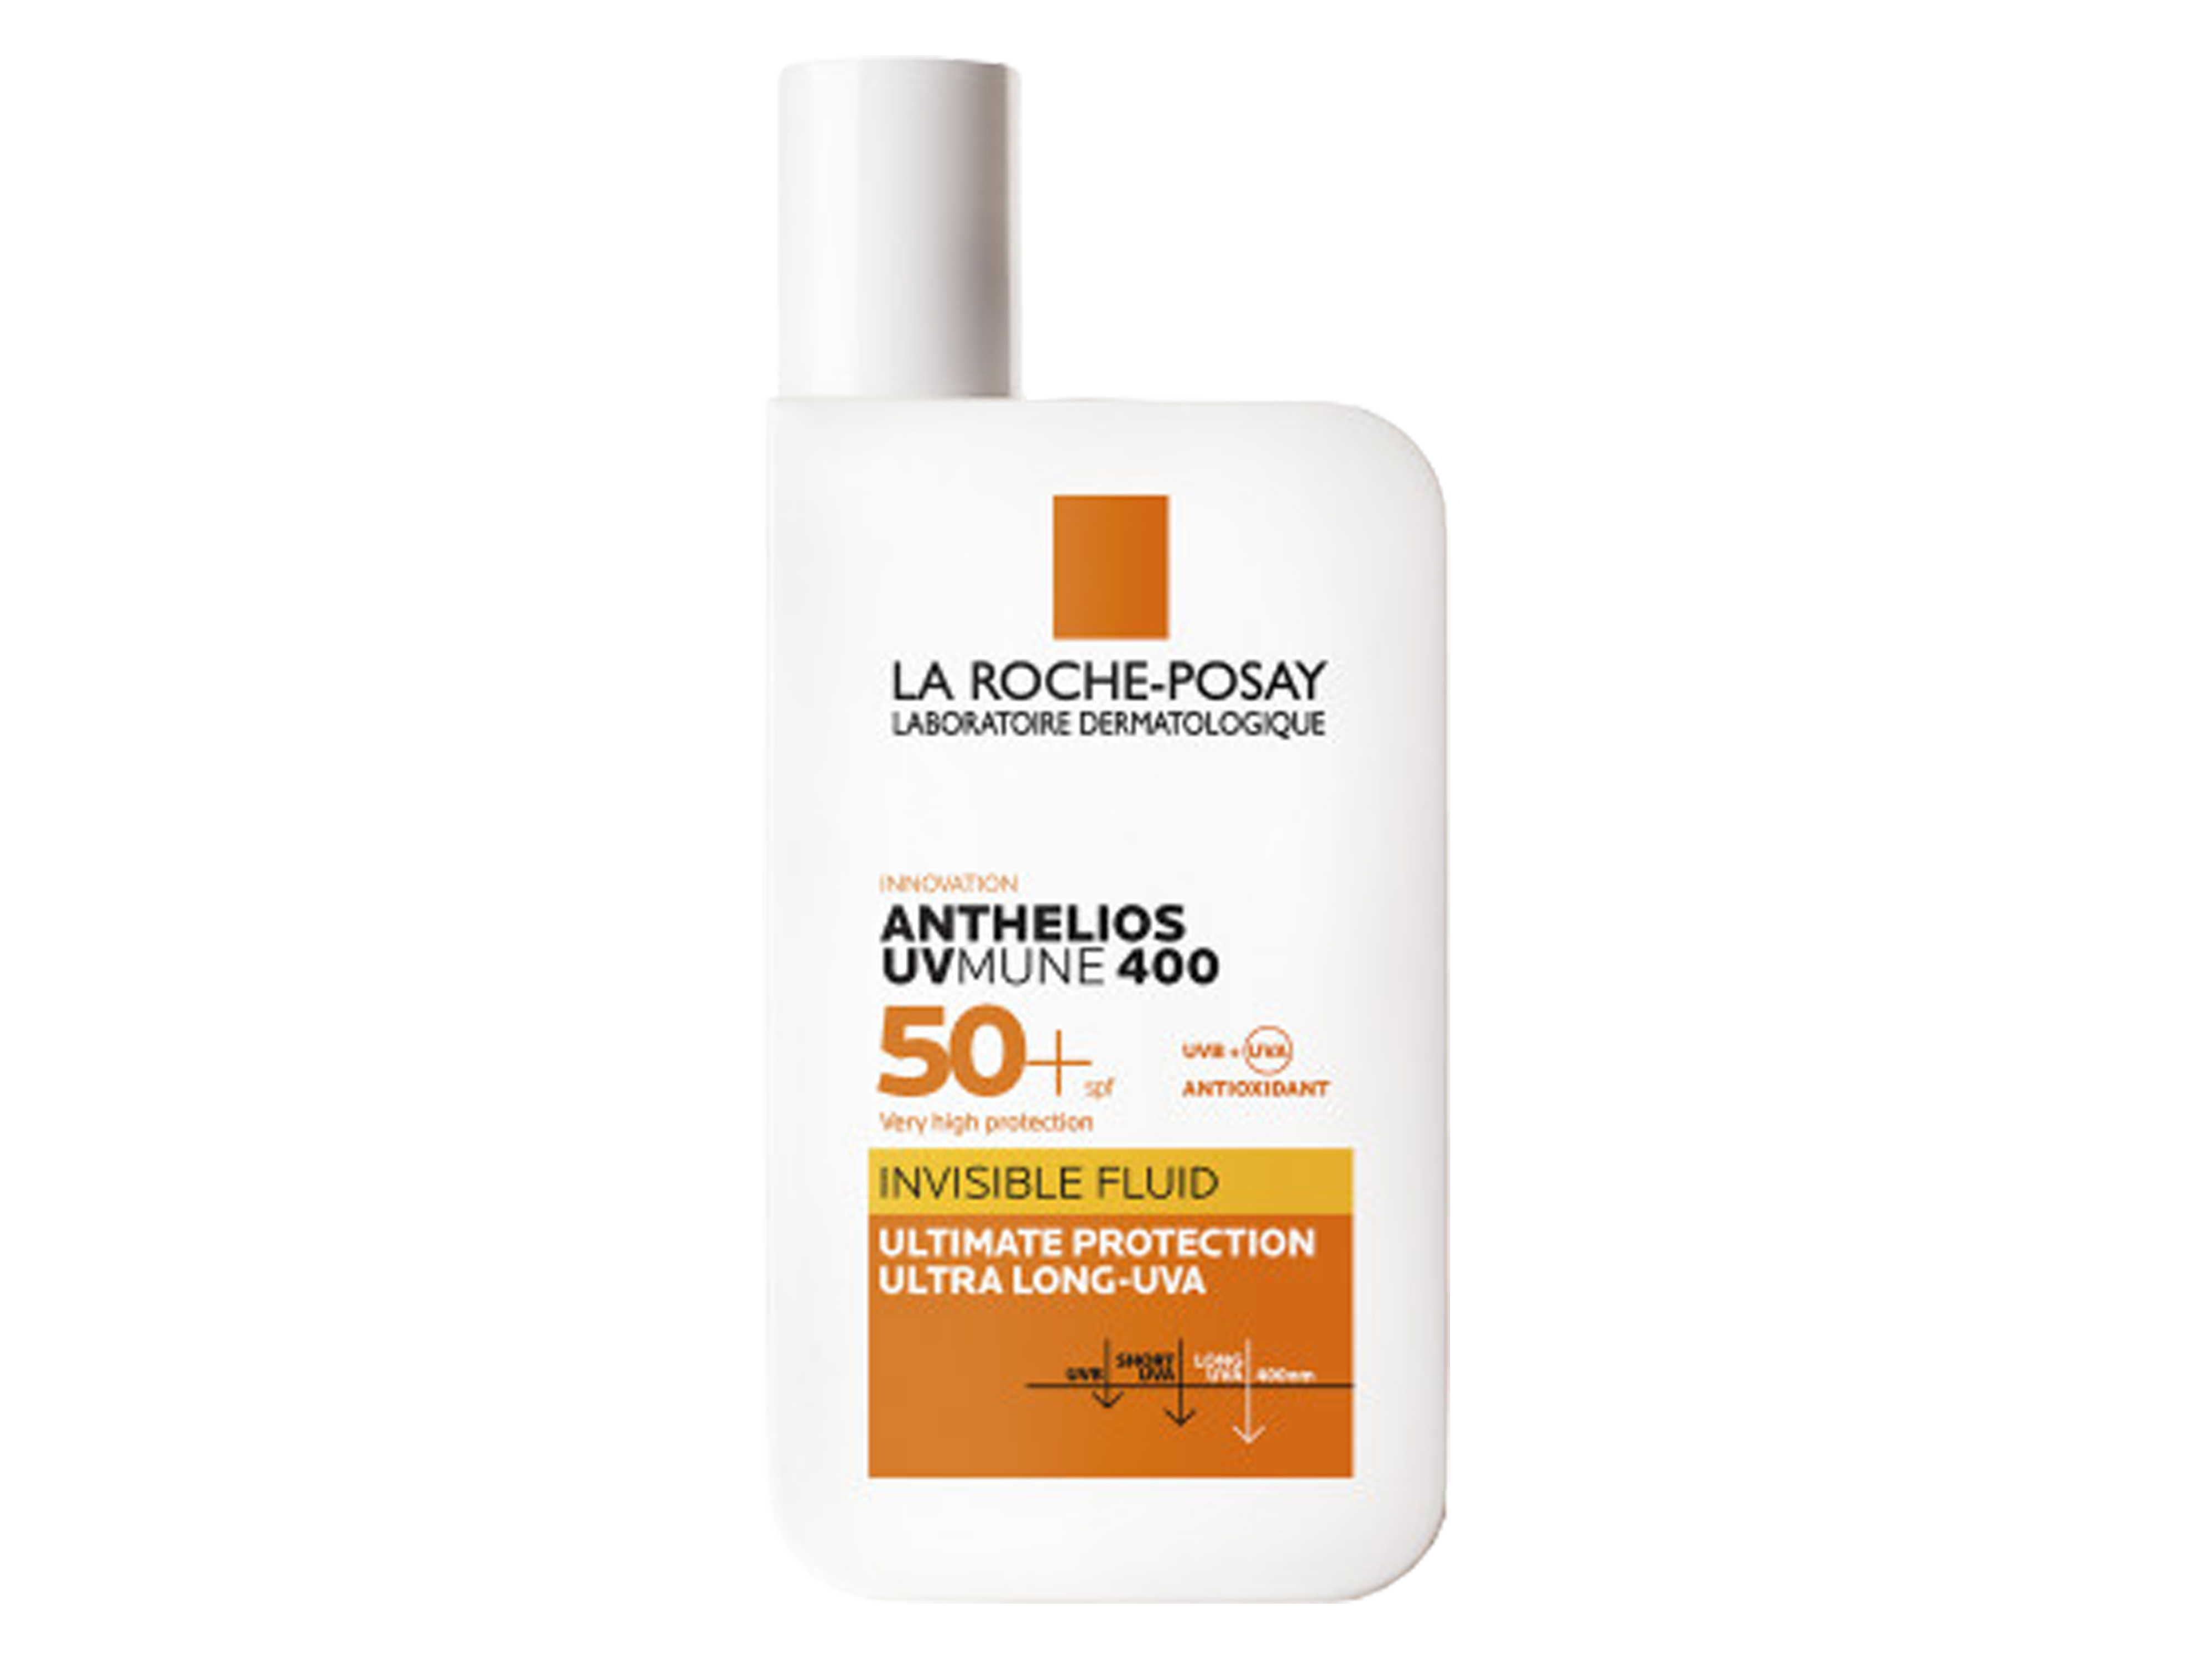 La Roche-Posay Anthelios UVMUNE Ultralight Cream SPF50+, 50 ml